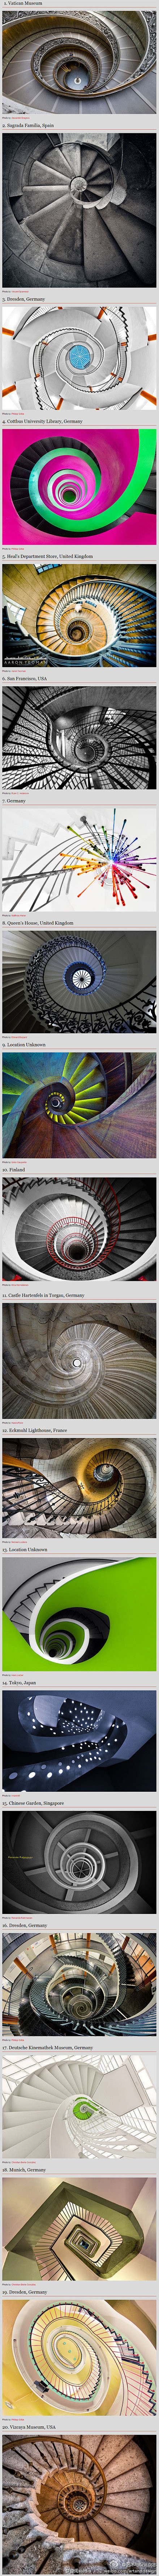 【艺术创意】世界上最美的20个旋转楼梯】...